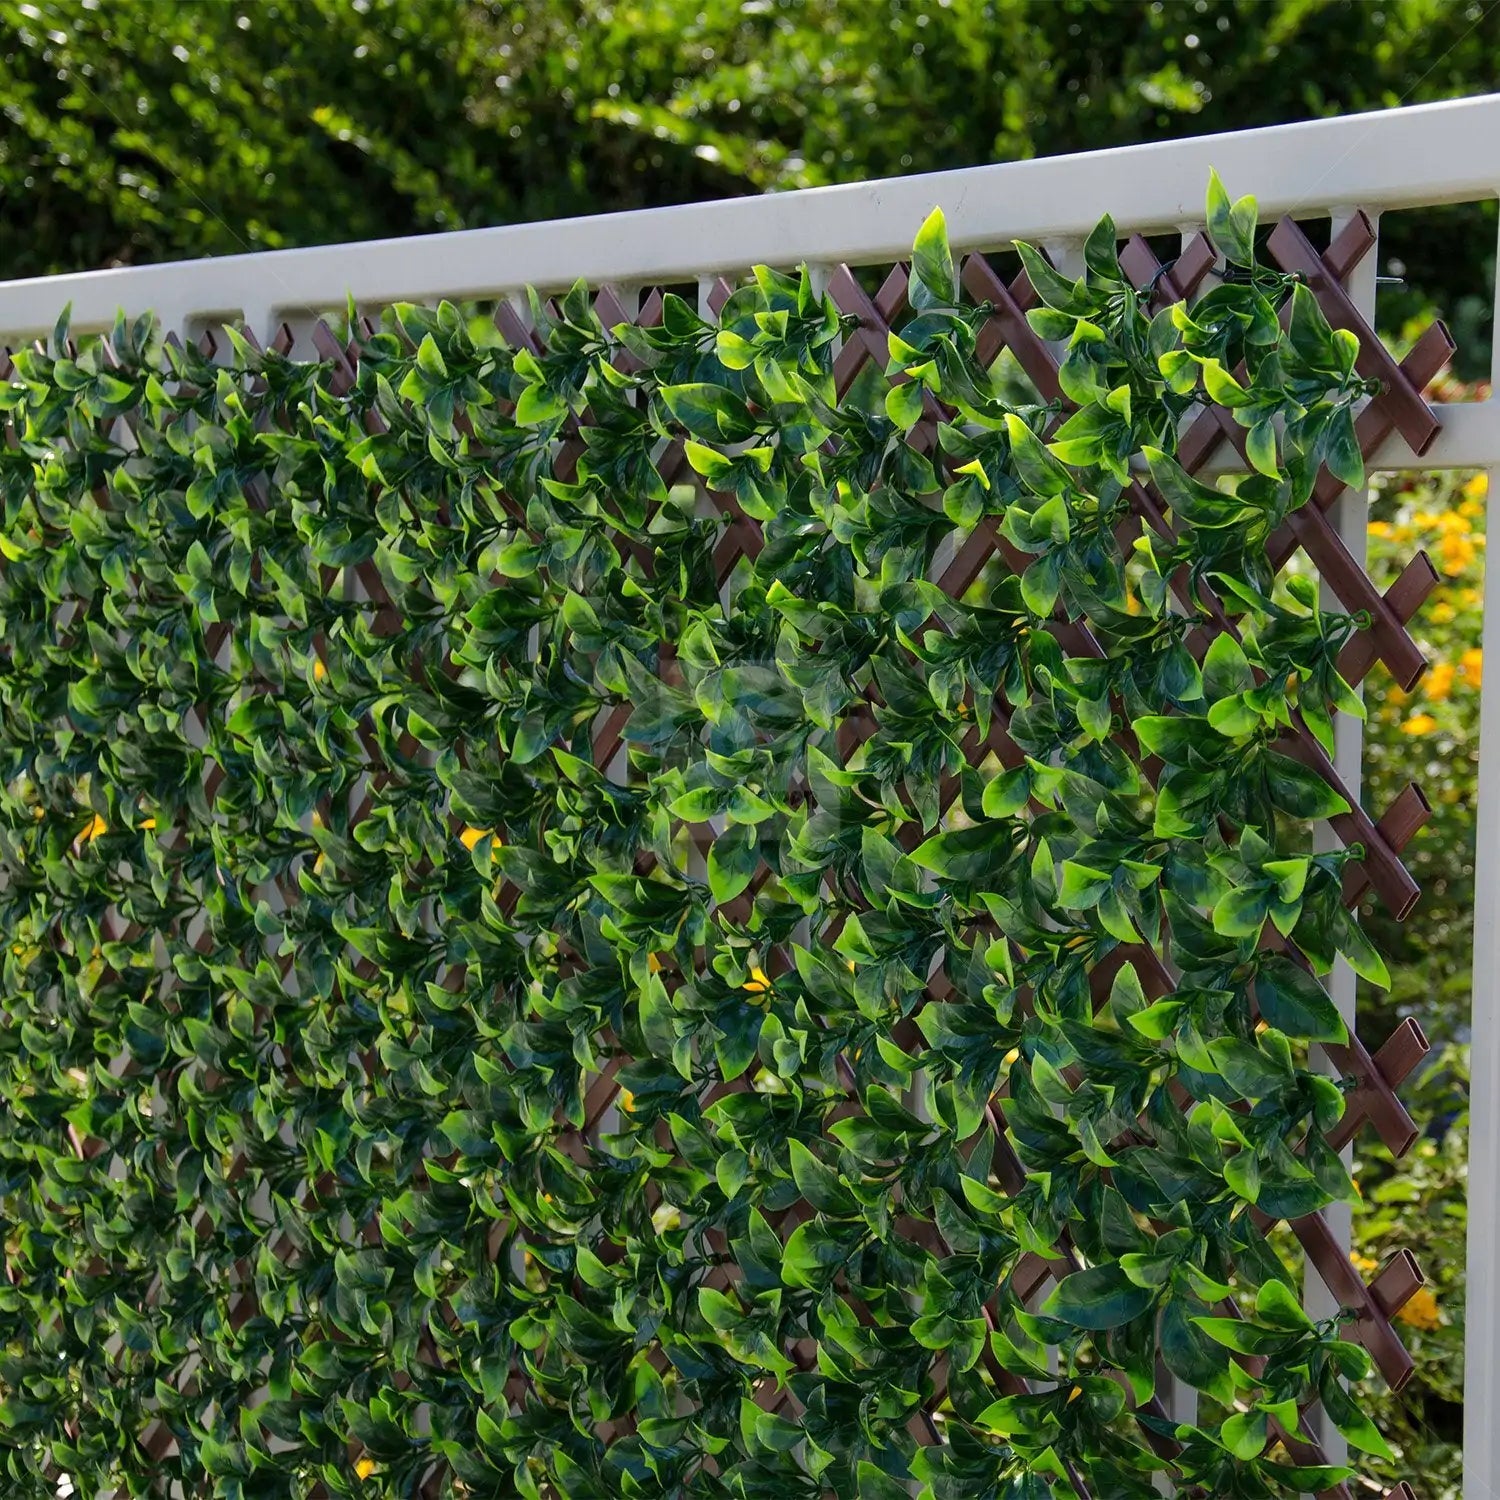 Expandable Faux Green Ligustrum Ficus Trellis Privacy Fence (Variable Size) UV Resistant